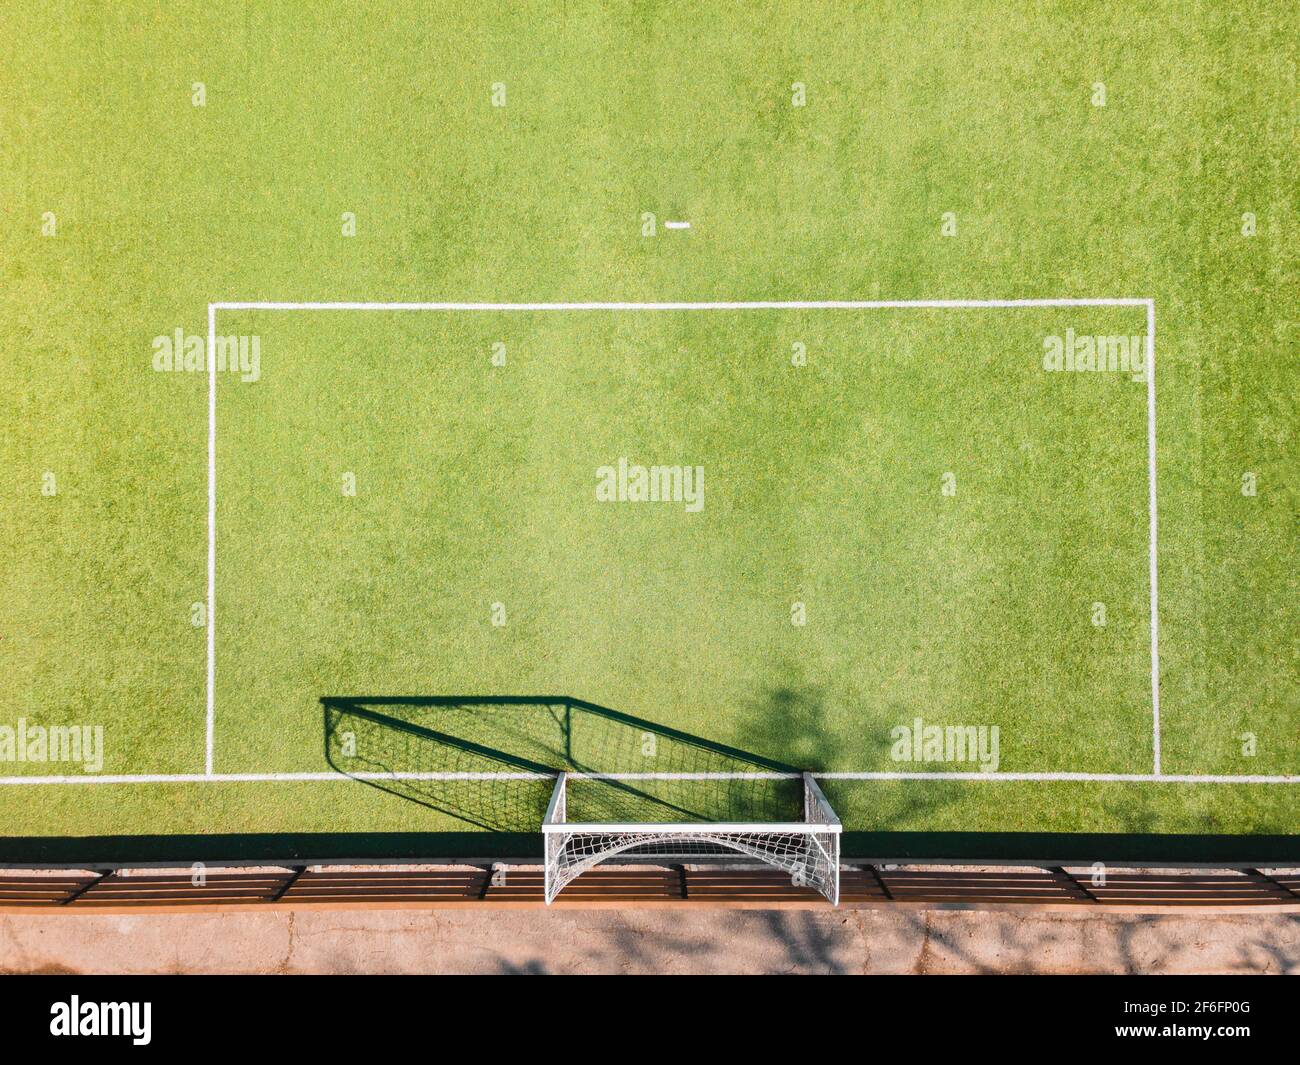 Détails du terrain de football. Terrain de sport extérieur avec surface verte pour jouer au football ou au football en zone urbaine, détail, vue de drone Banque D'Images